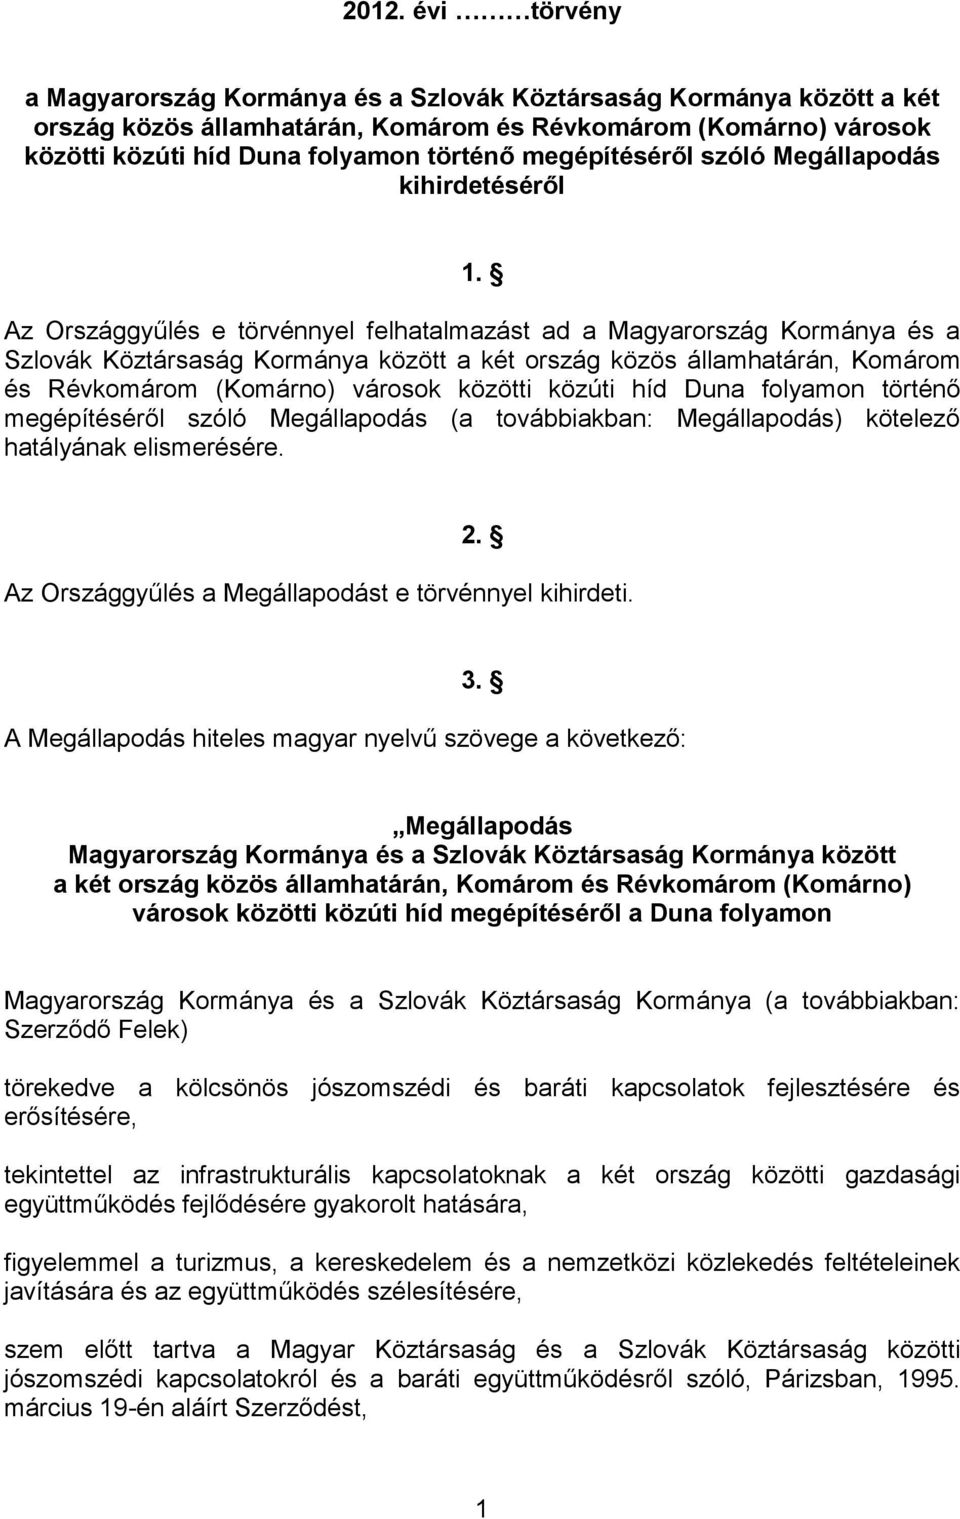 Az Országgyűlés e törvénnyel felhatalmazást ad a Magyarország Kormánya és a Szlovák Köztársaság Kormánya között a két ország közös államhatárán, Komárom és Révkomárom (Komárno) városok közötti közúti